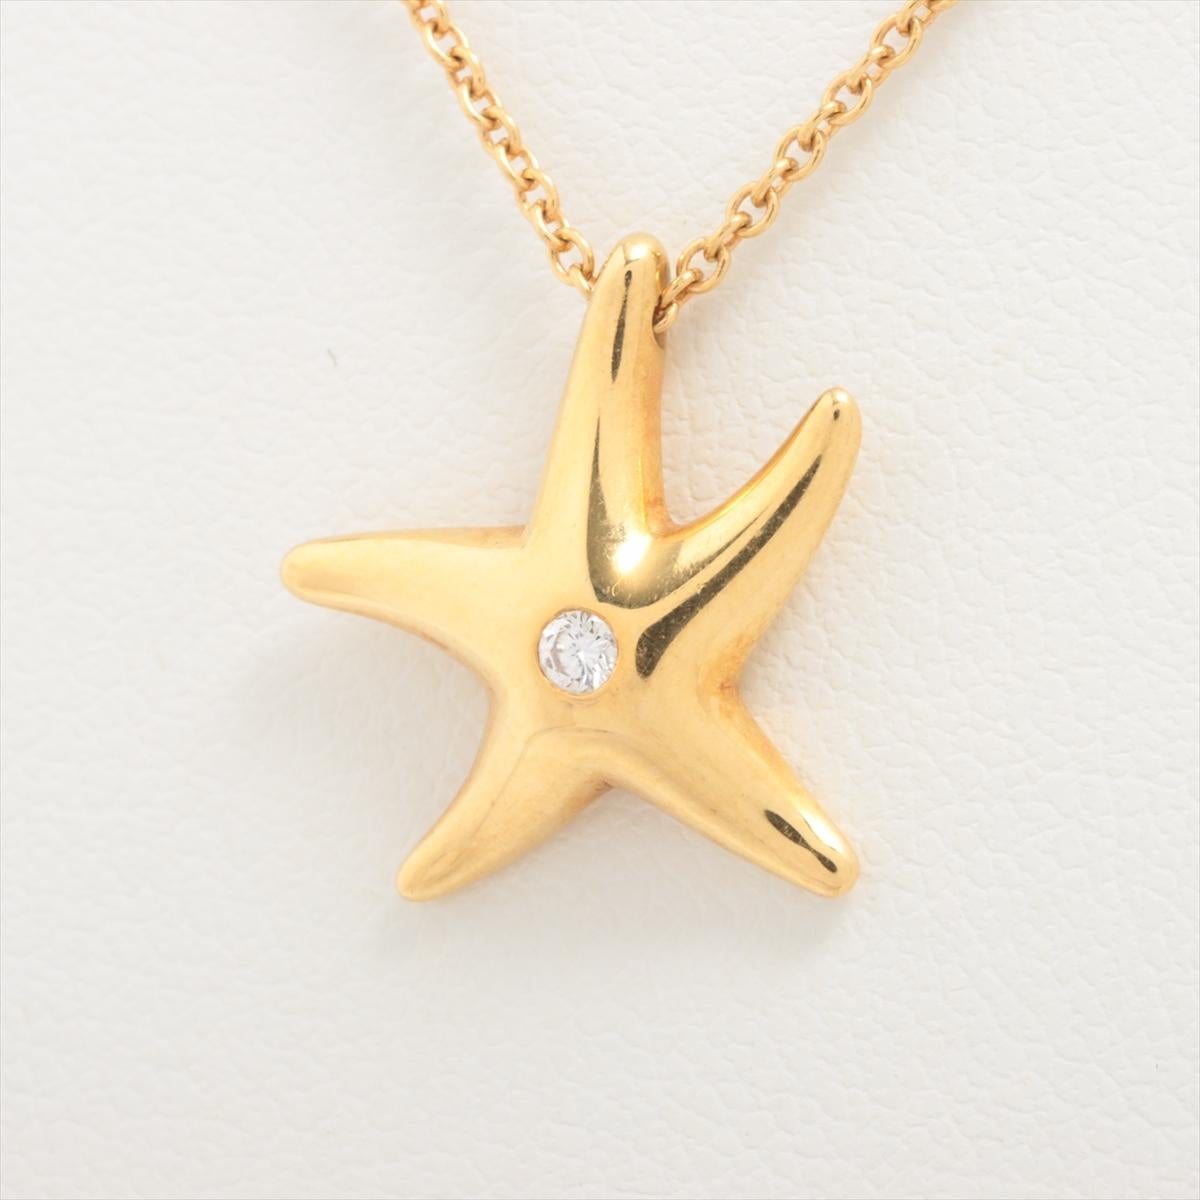 La collection Tiffany & Co. Collier à diamant étoile de mer en or un accessoire captivant et élégant qui évoque la beauté de la mer. Méticuleusement réalisé par Tiffany & Co, le collier présente un délicat pendentif en forme d'étoile de mer orné